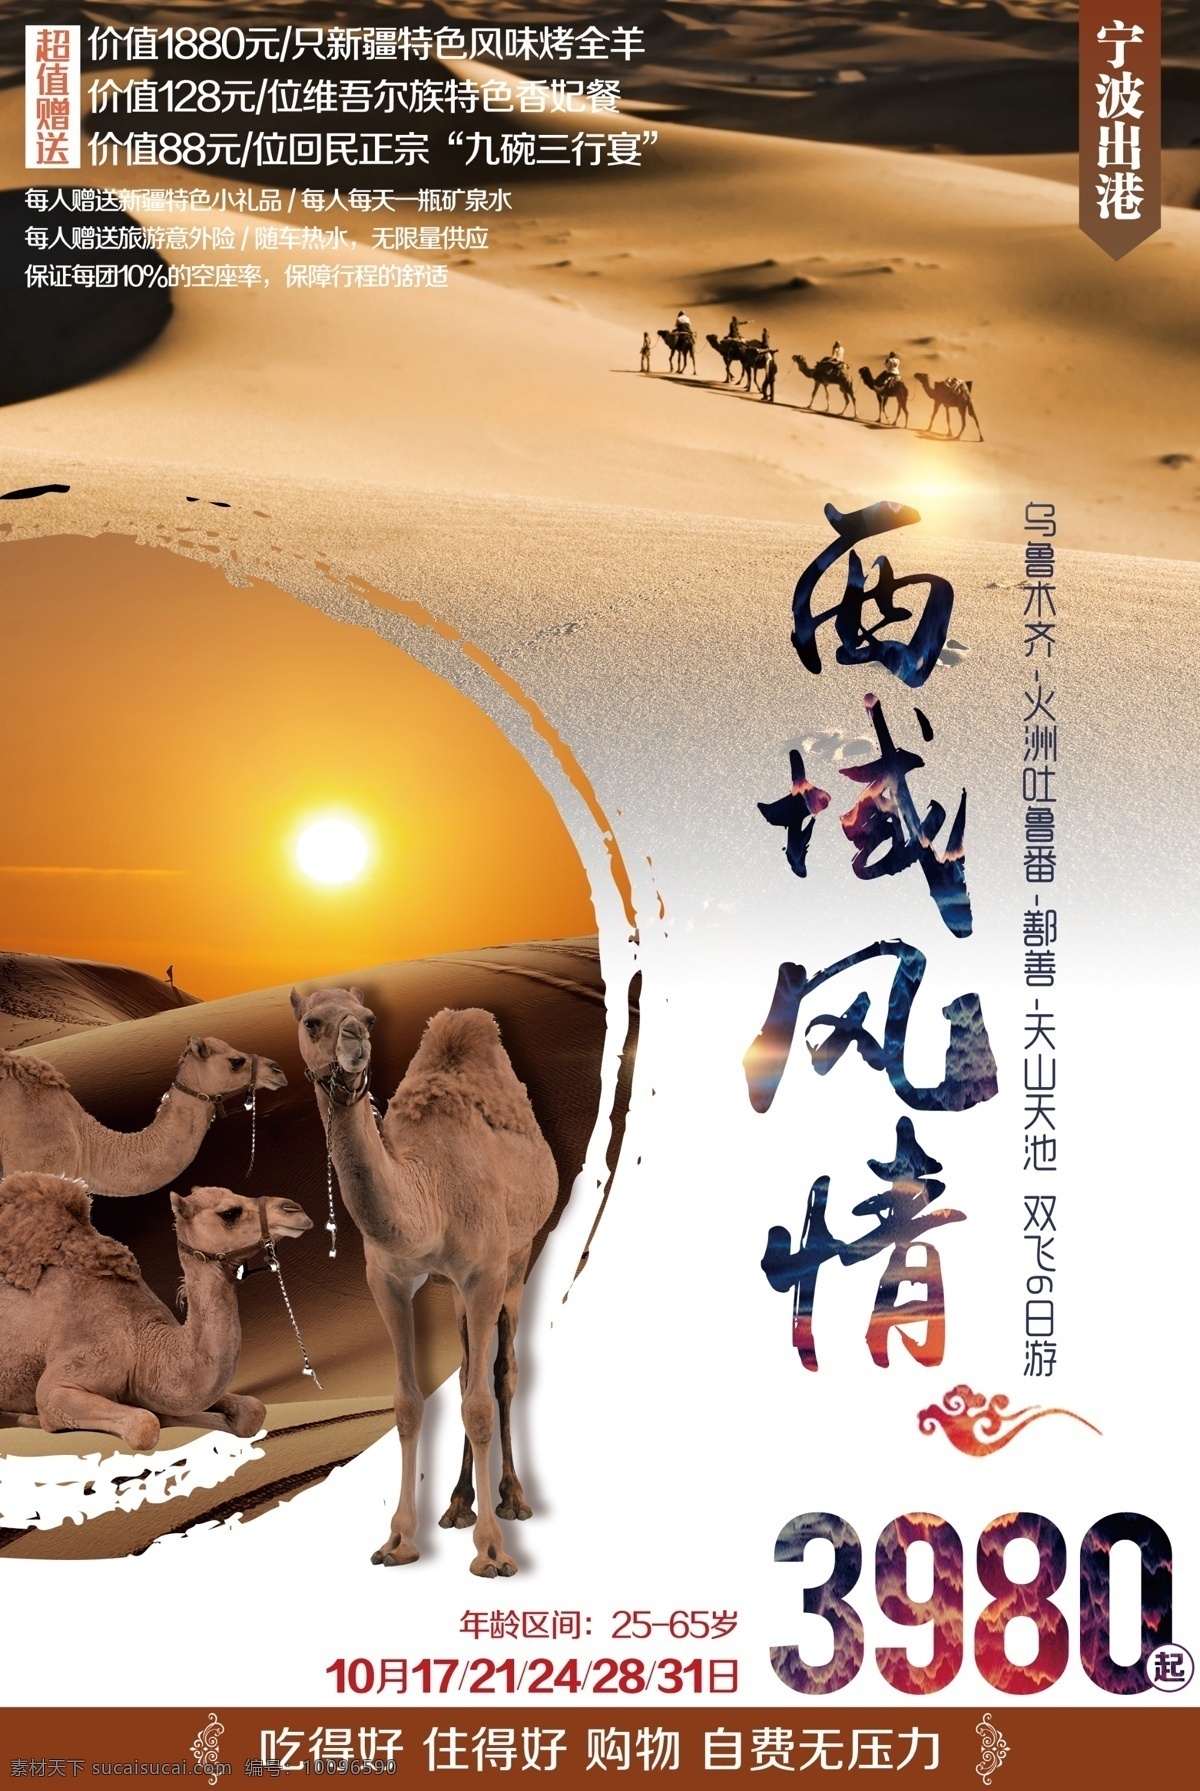 西域风情 西域 新疆 旅游 骆驼 沙漠